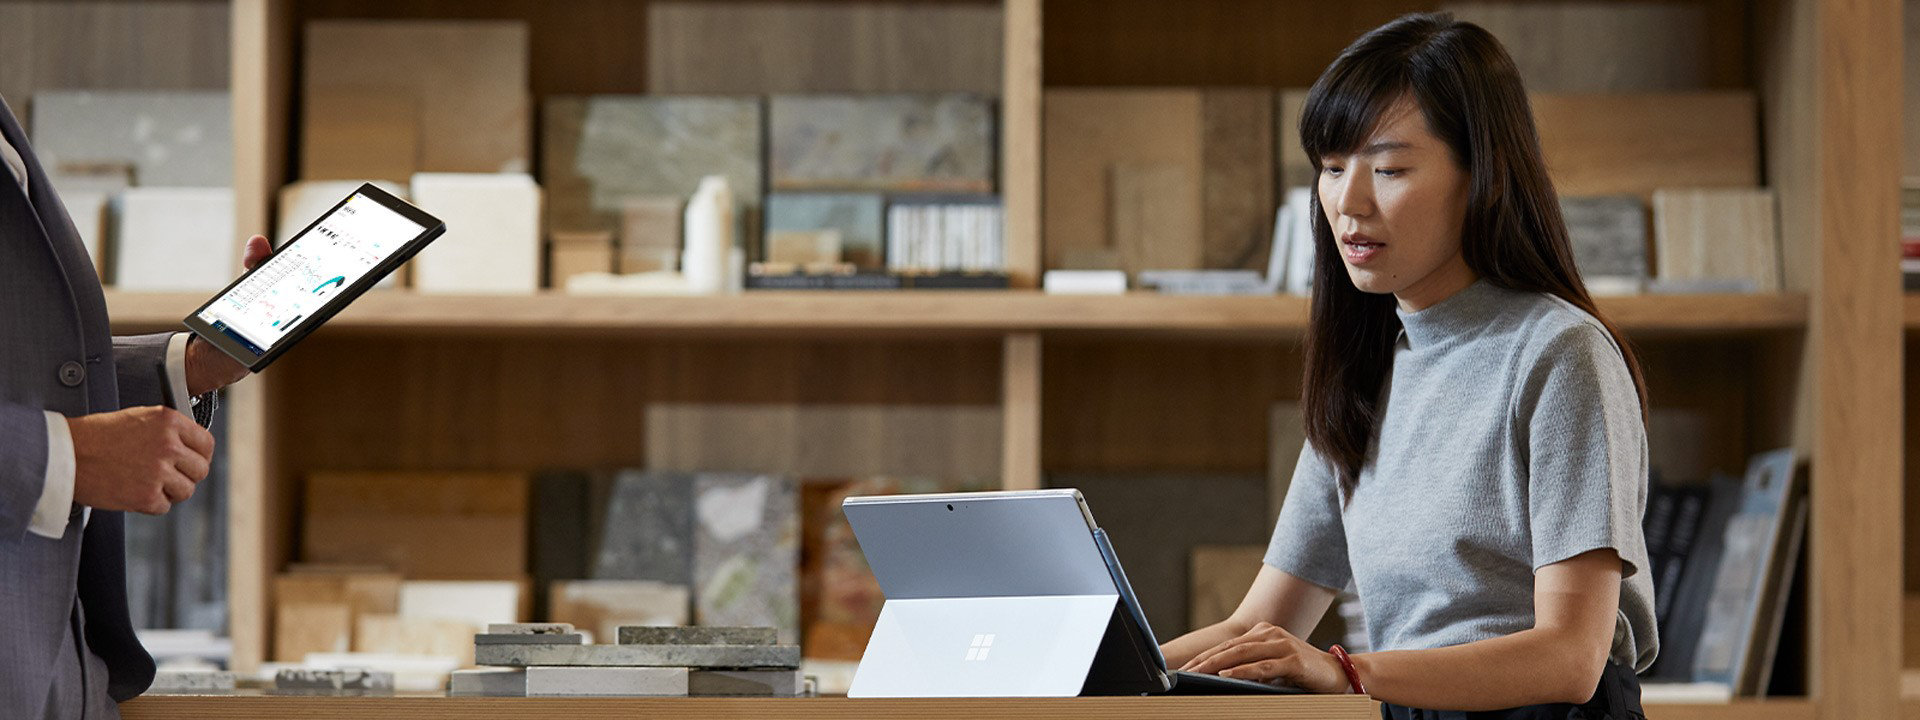 一位女性和她的同事一边使用 Surface 设备，一边讨论业务